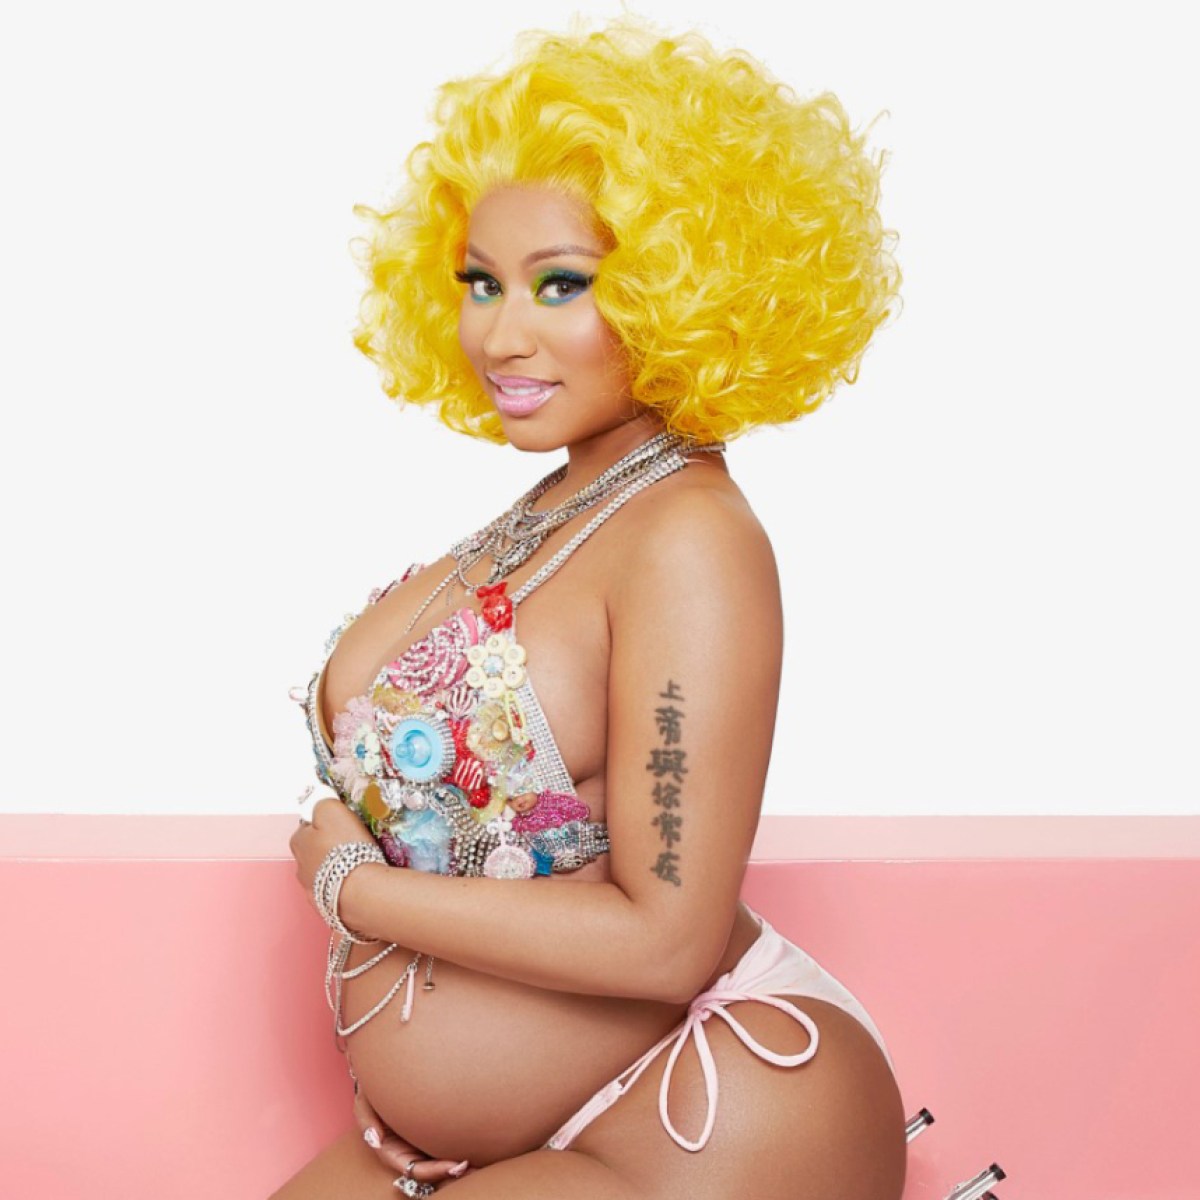 Nikki Minaj Porn - Pregnant Nicki Minaj's Baby Bump: See Photos So Far